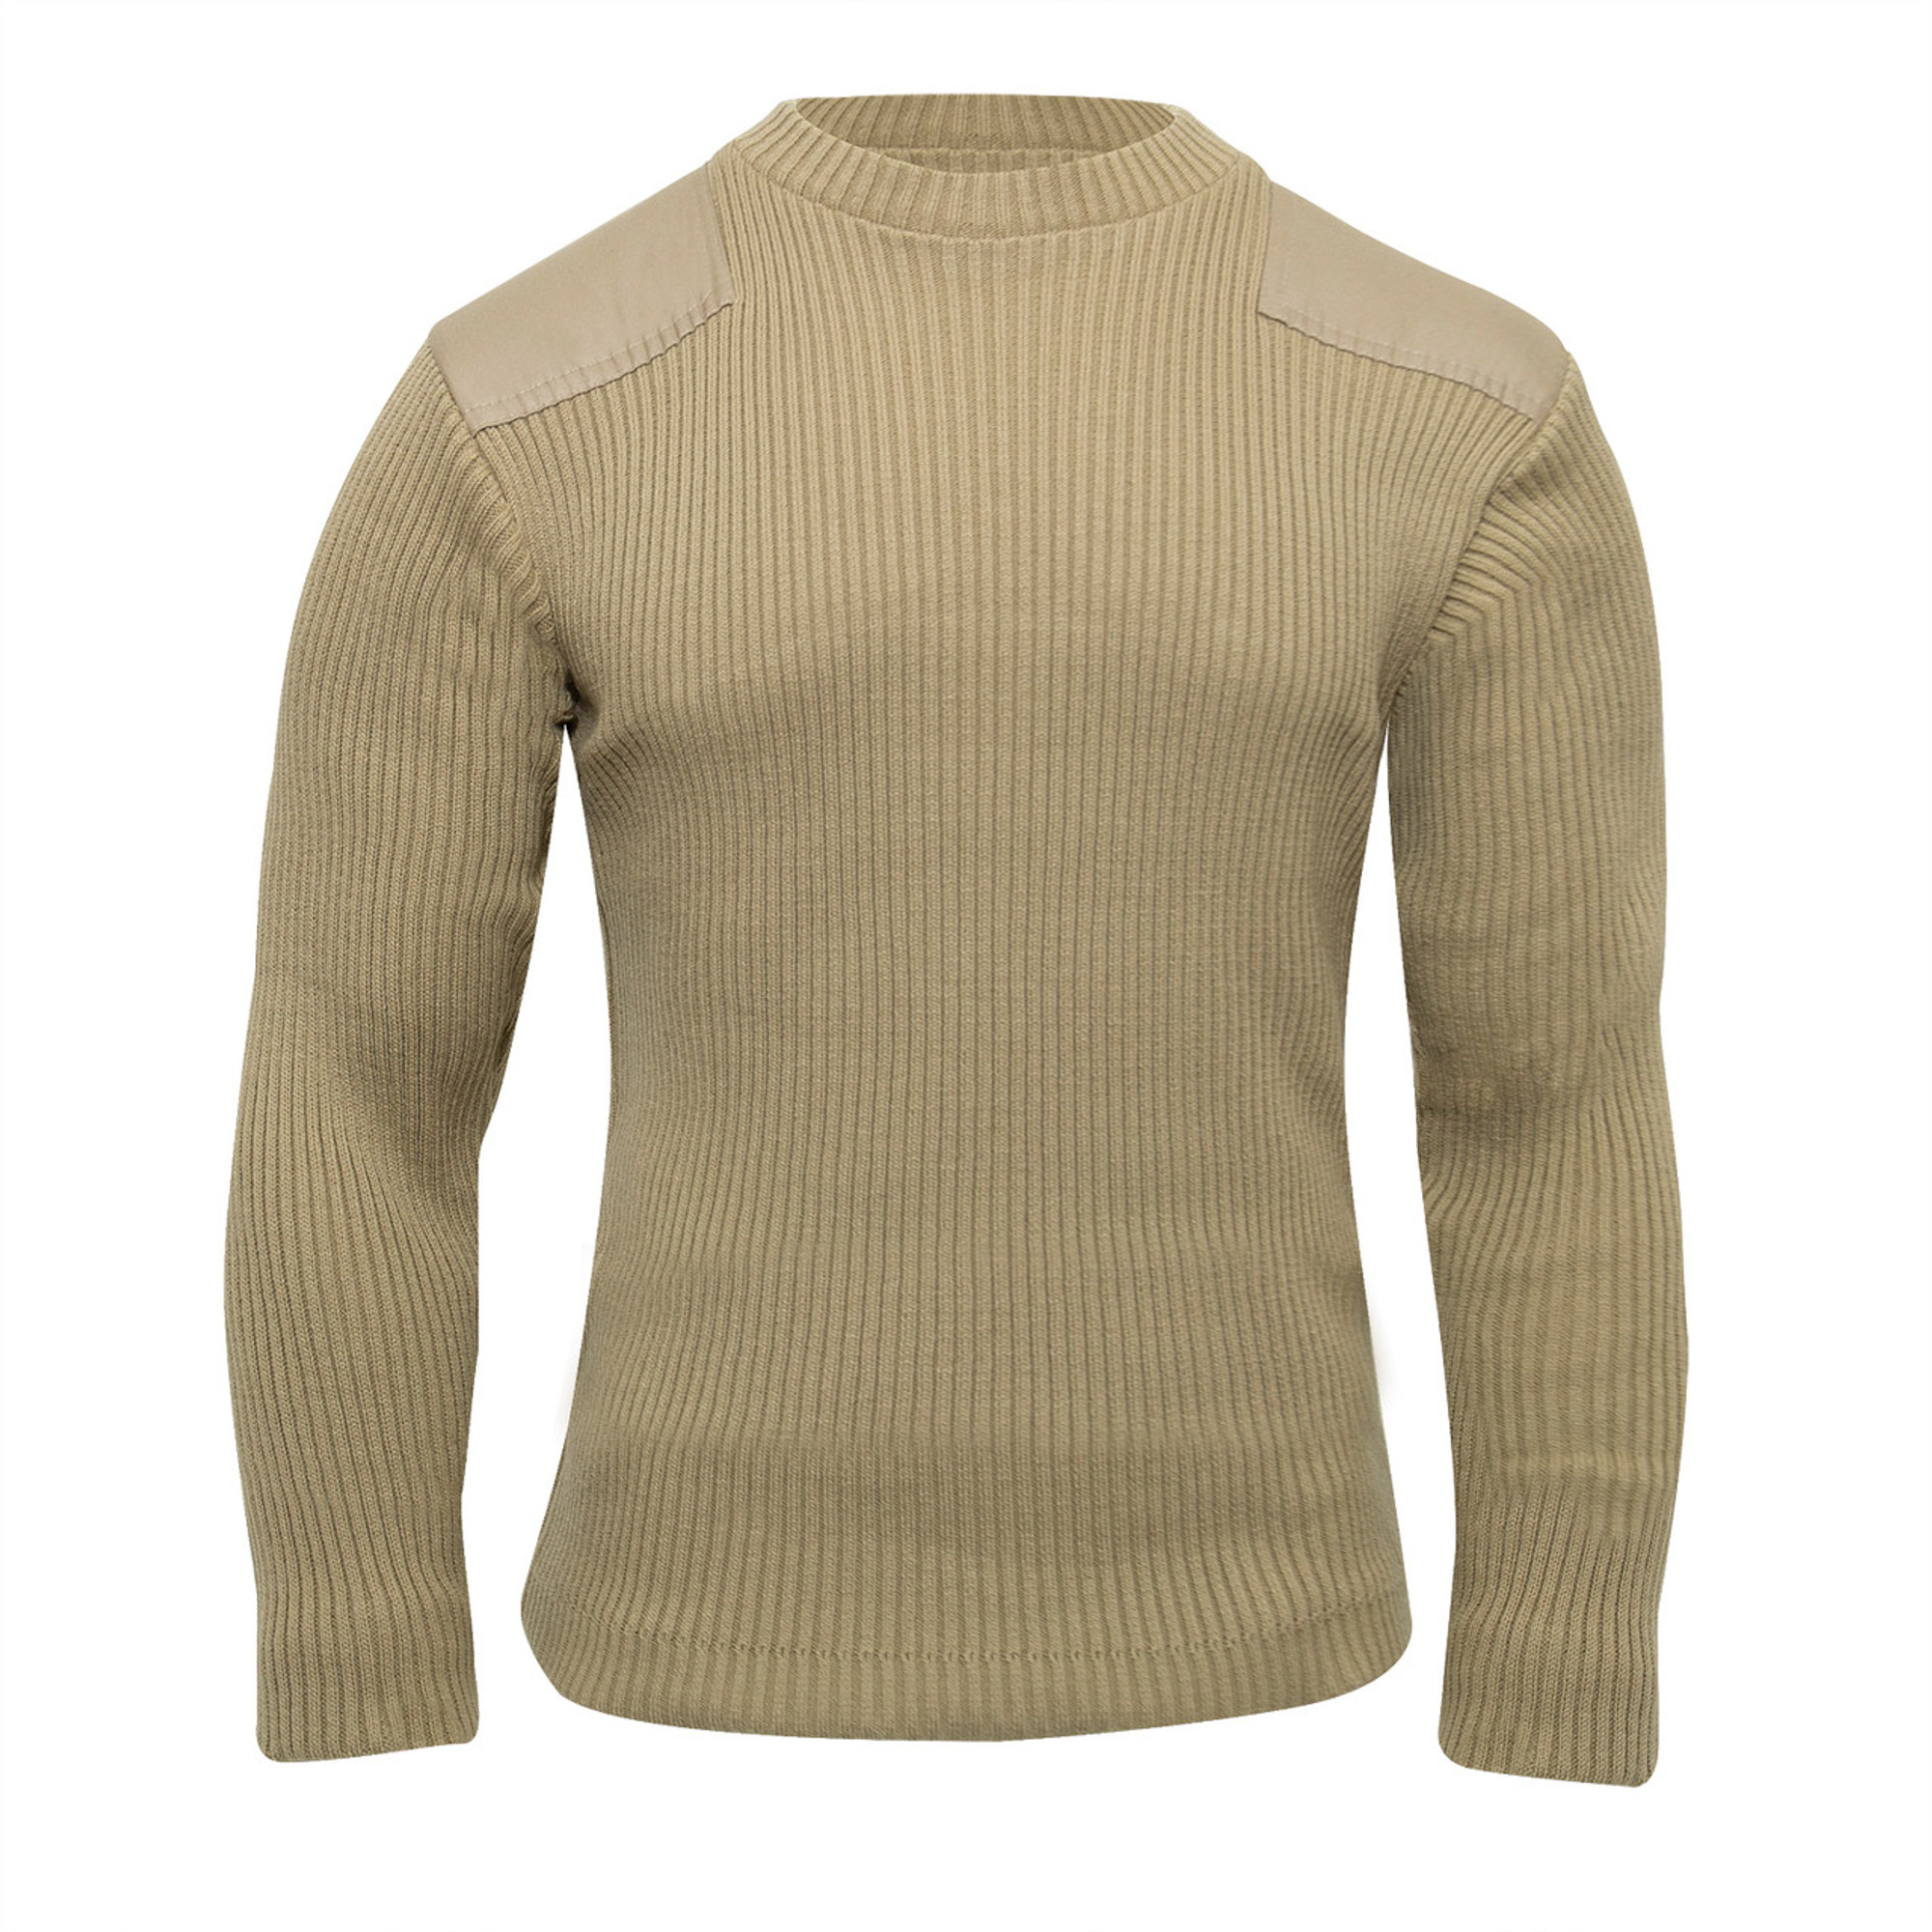 Rothco G.I. Style Acrylic Commando Sweater - Khaki